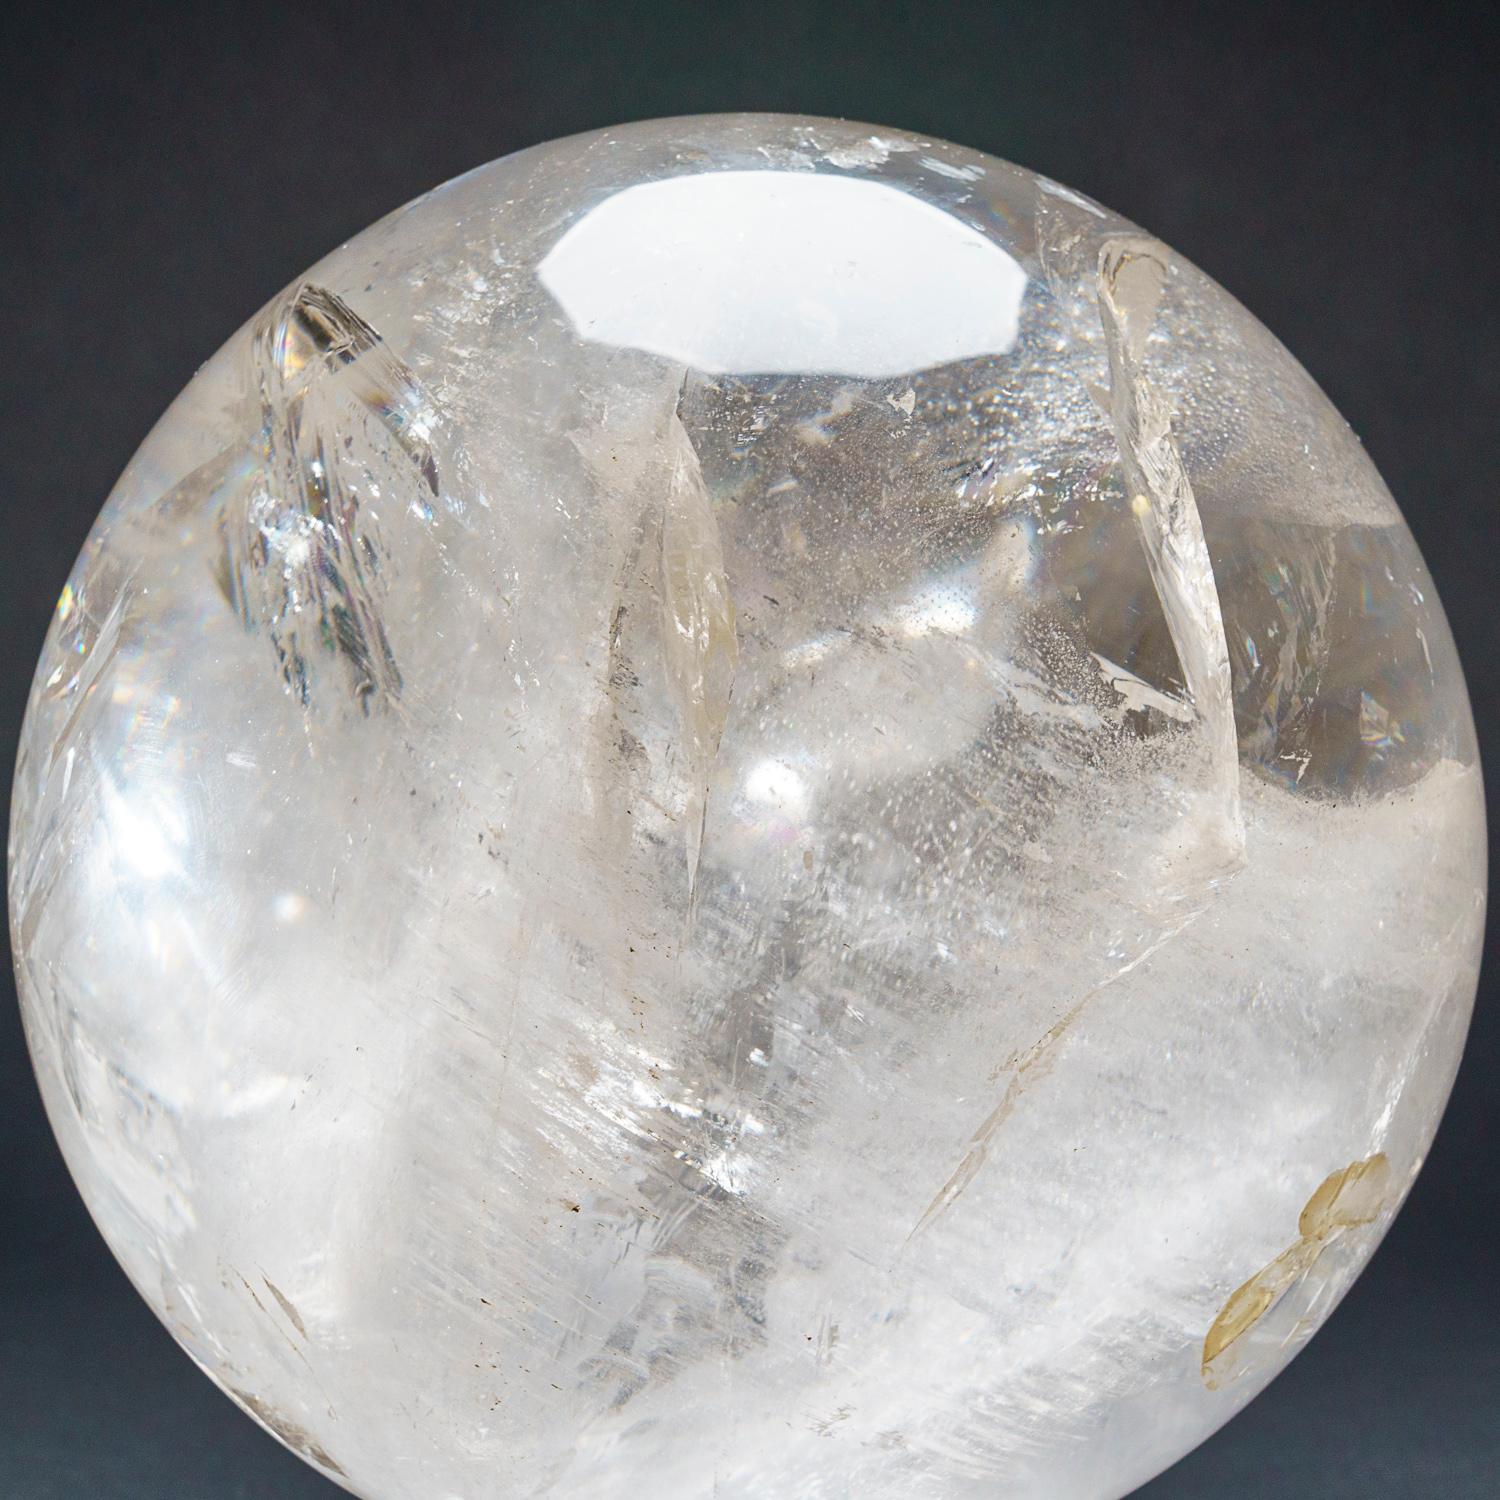 Cette sphère de quartz clair poli de qualité muséale provient du Brésil. Cette sphère pèse 34 livres et a été polie de manière experte pour atteindre un haut niveau de transparence et de réflectivité, ce qui en fait un excellent spécimen pour un